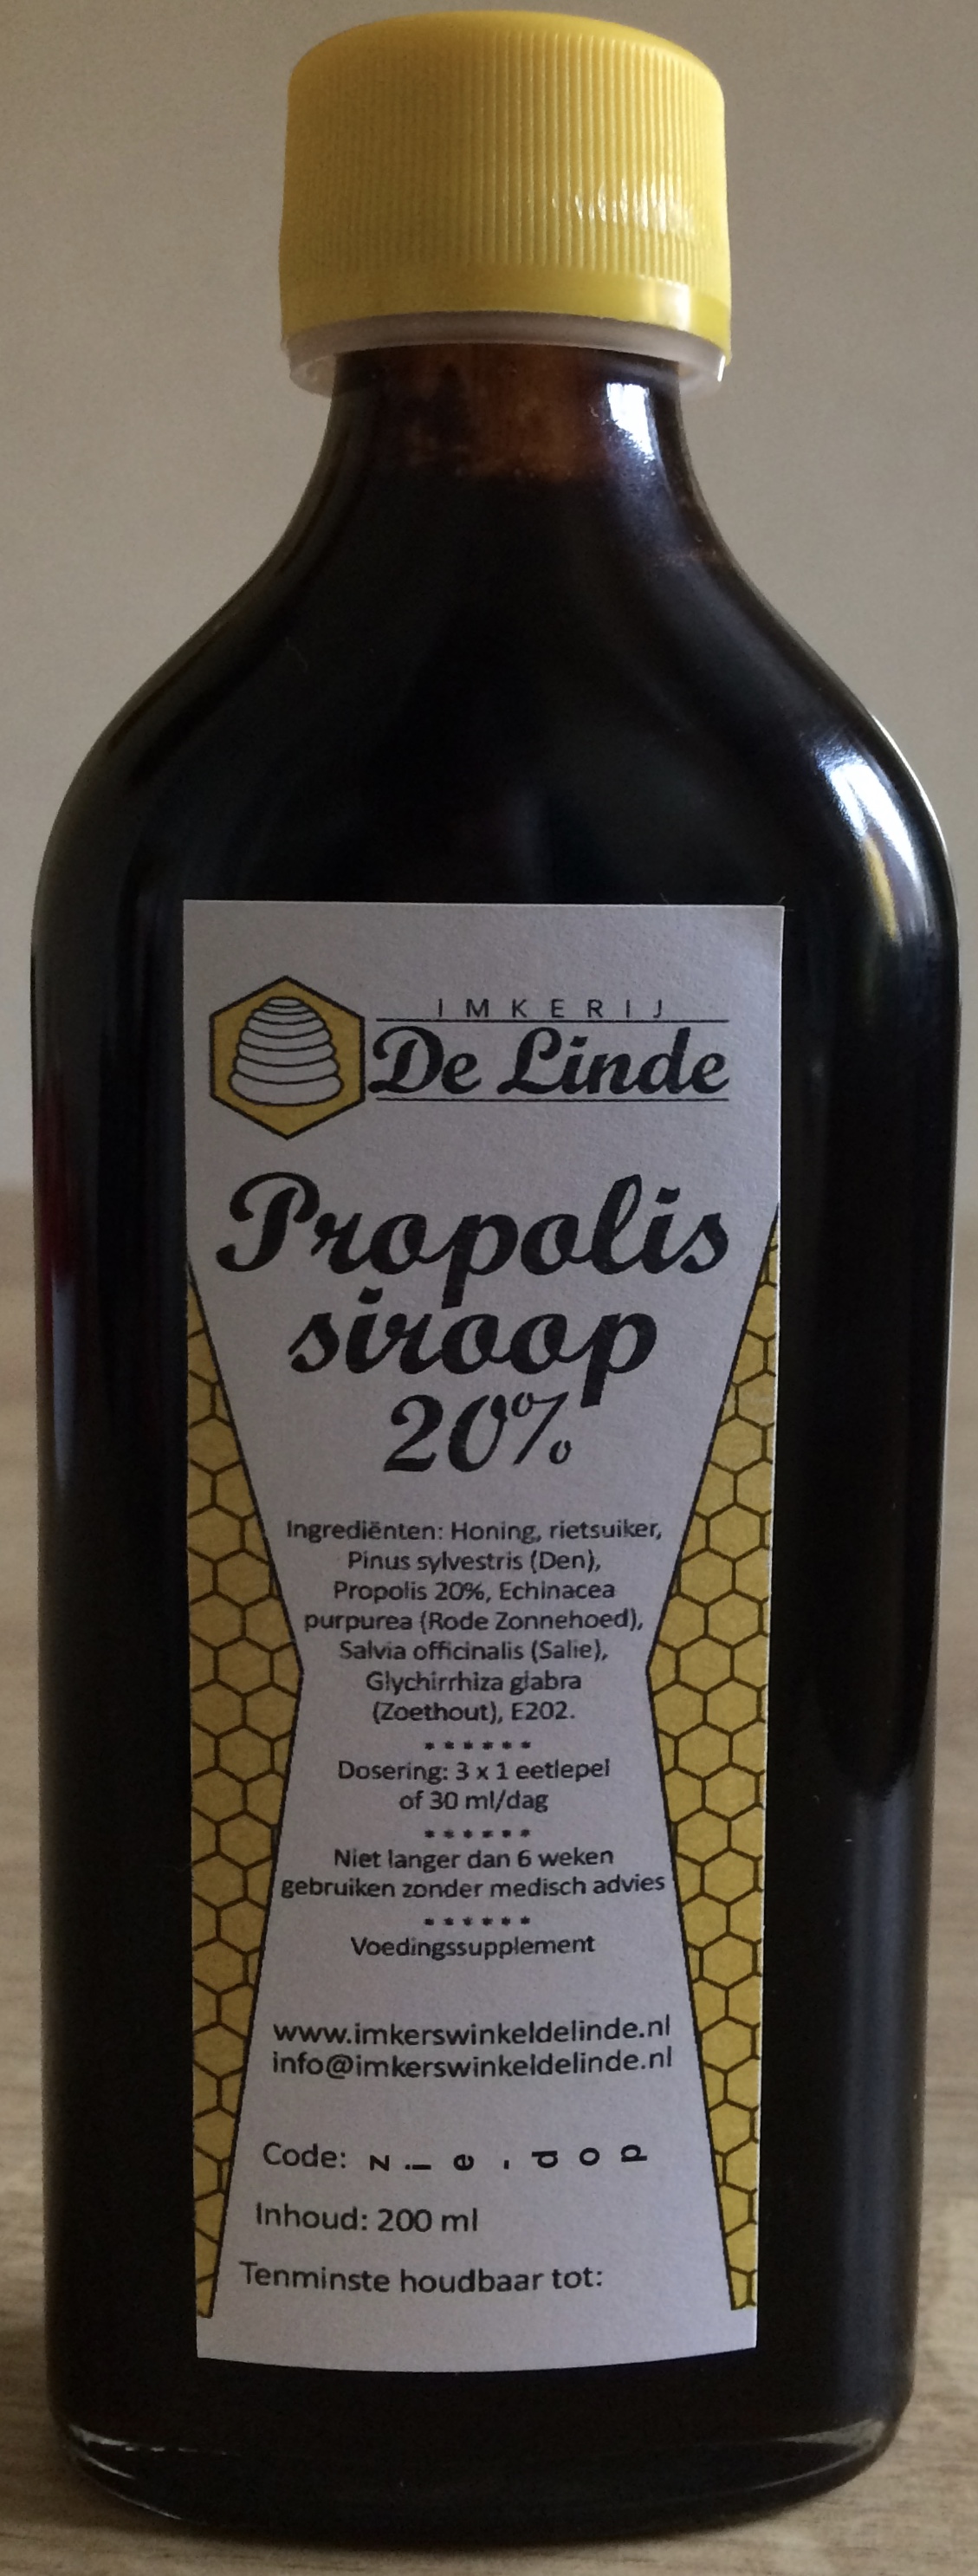 Propolissiroop 20% 200 ml kopen bij Imkerij De Linde